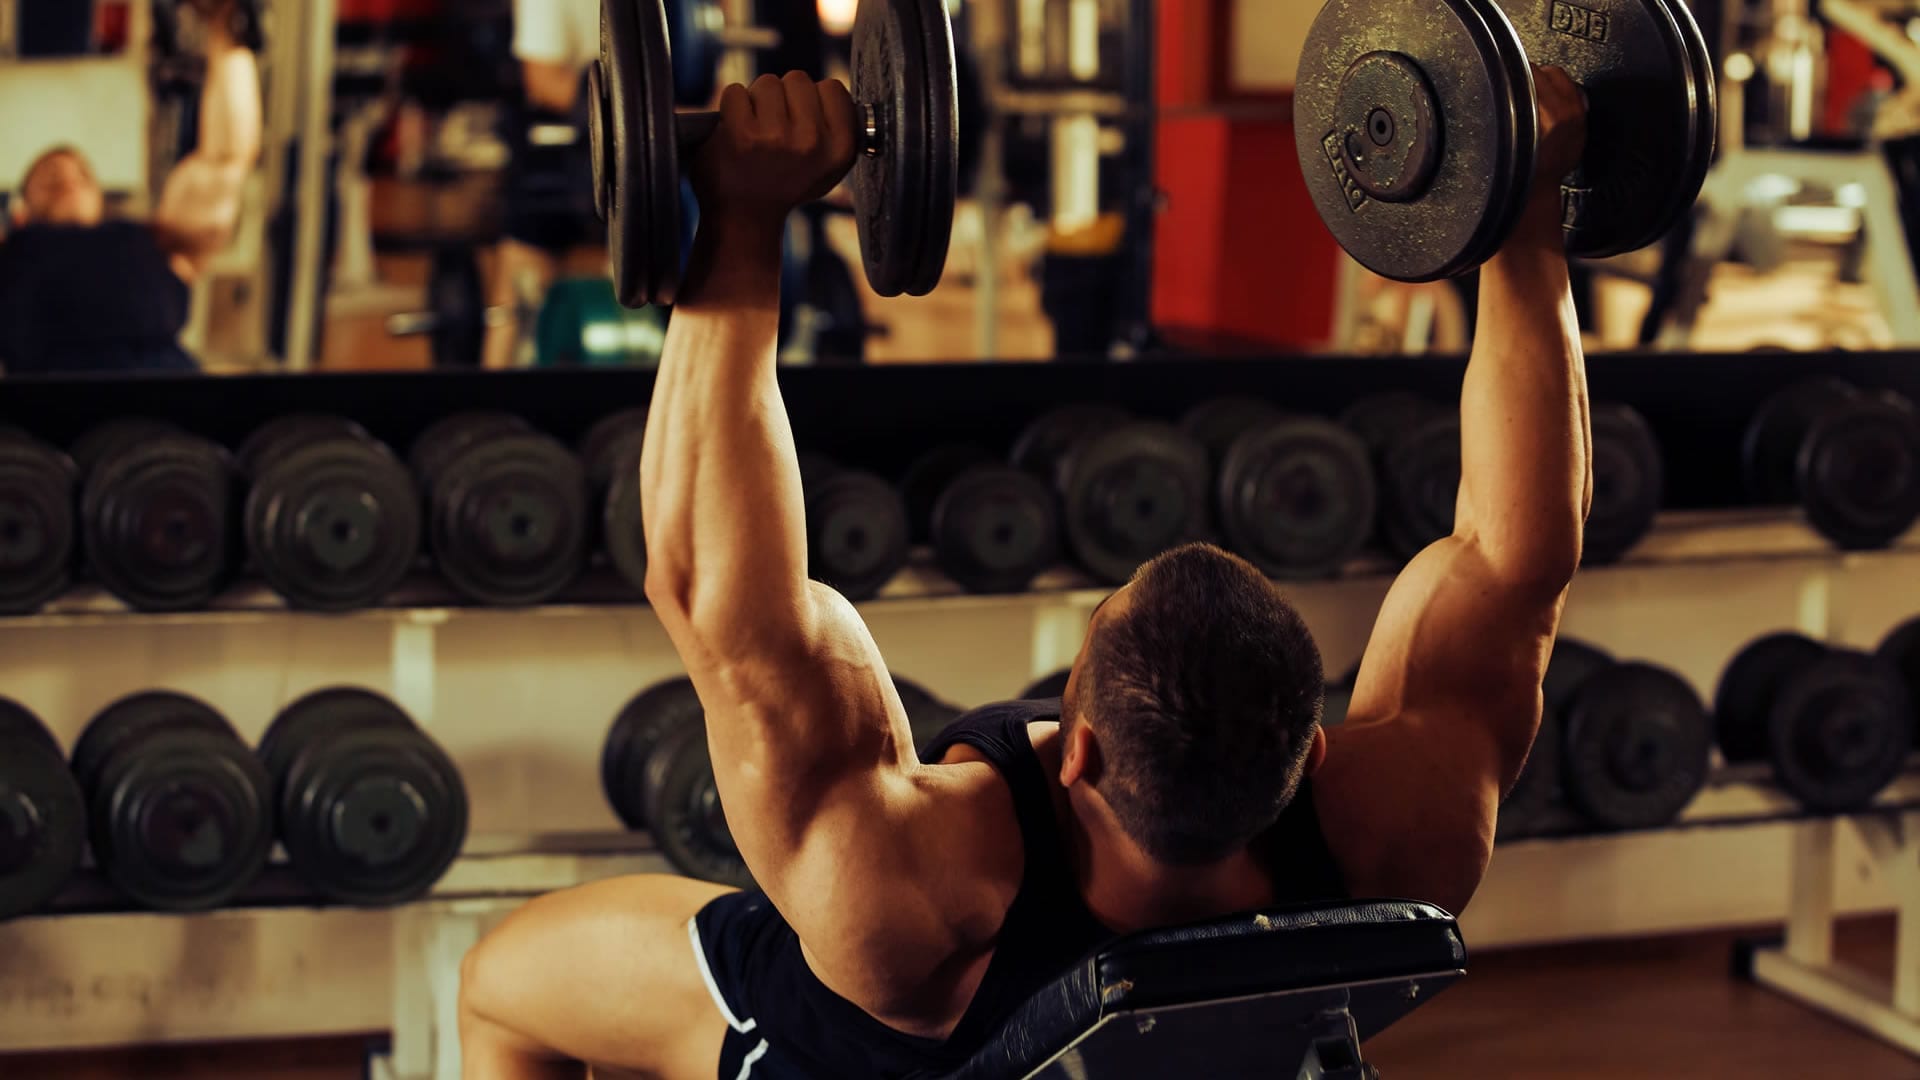 Fallo muscular: ¿Qué es y cómo se realiza?